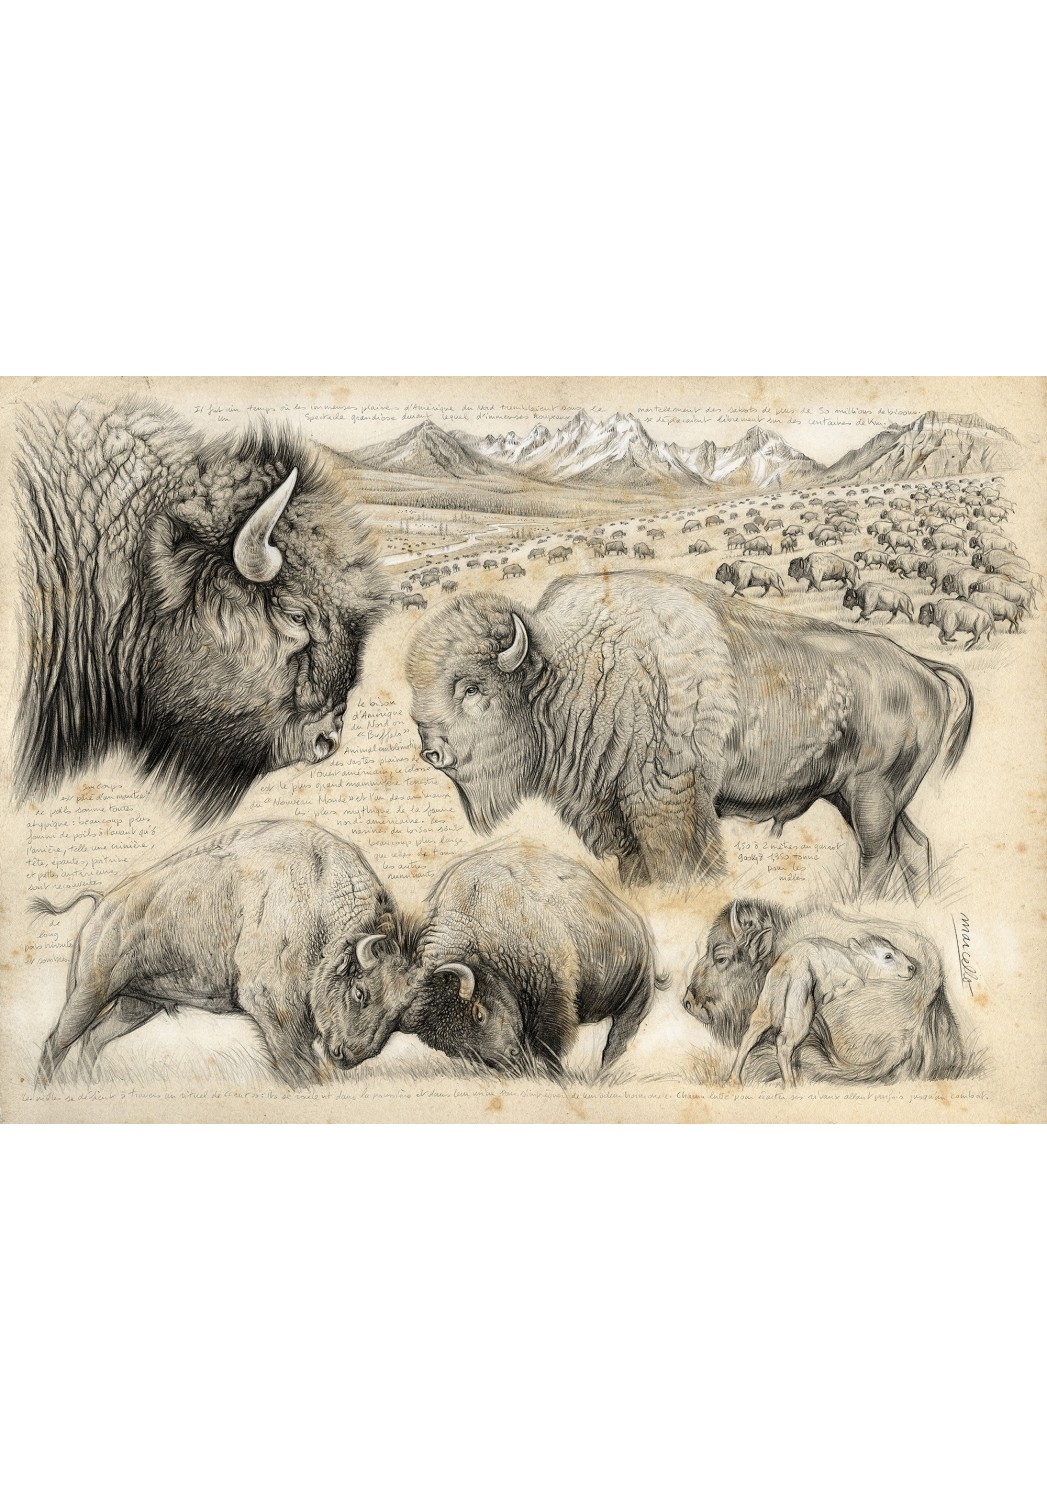 Marcello-art : Cartes de faire part 390 - Tatanka, bison d'Amérique